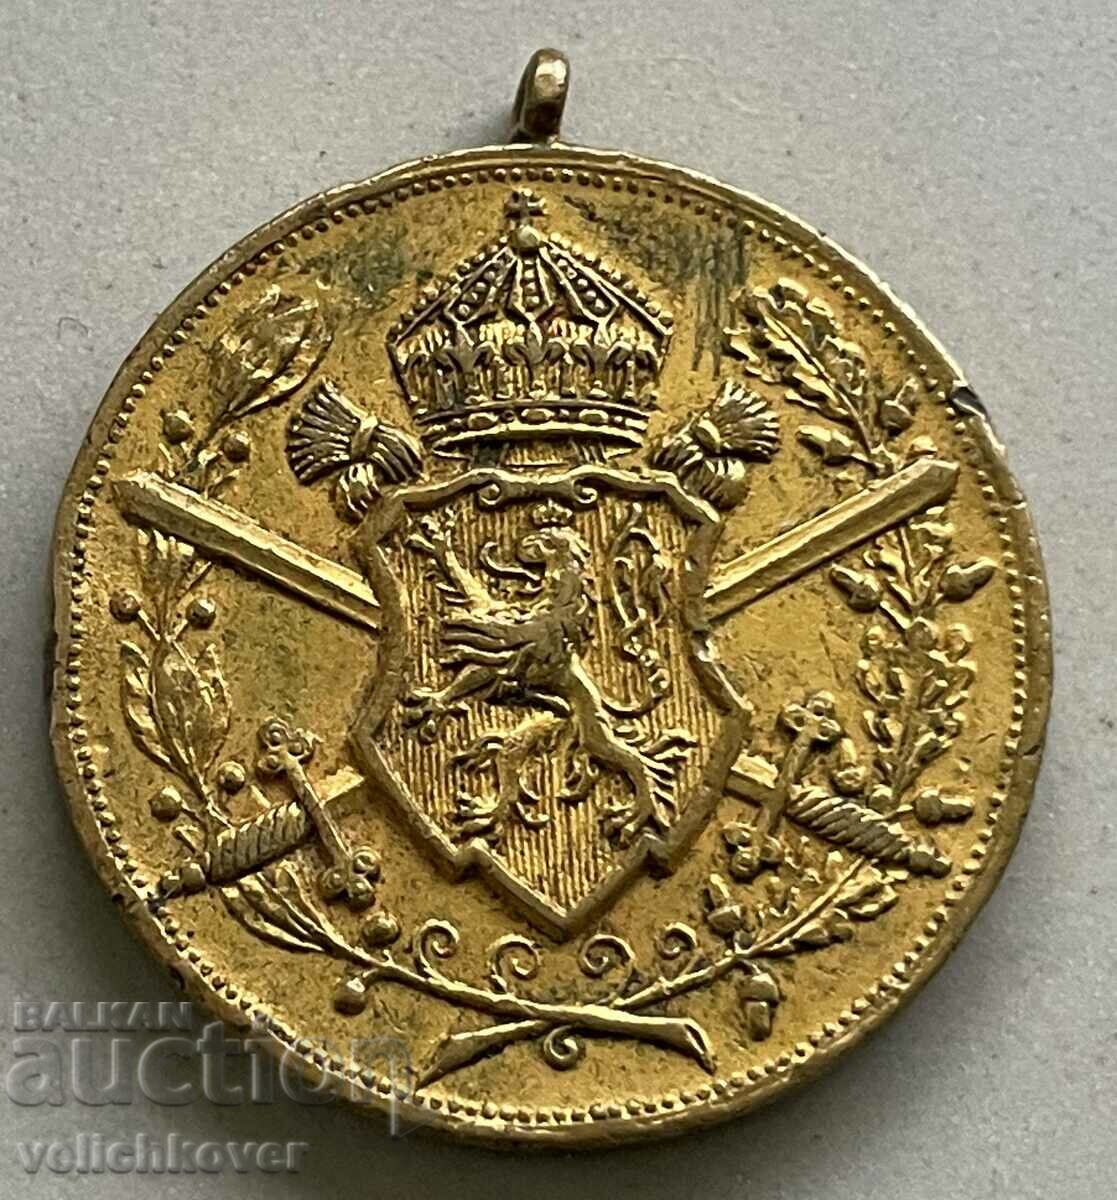 34228 Βασιλείου της Βουλγαρίας μετάλλιο συμμετοχής PSV 1915-1918.